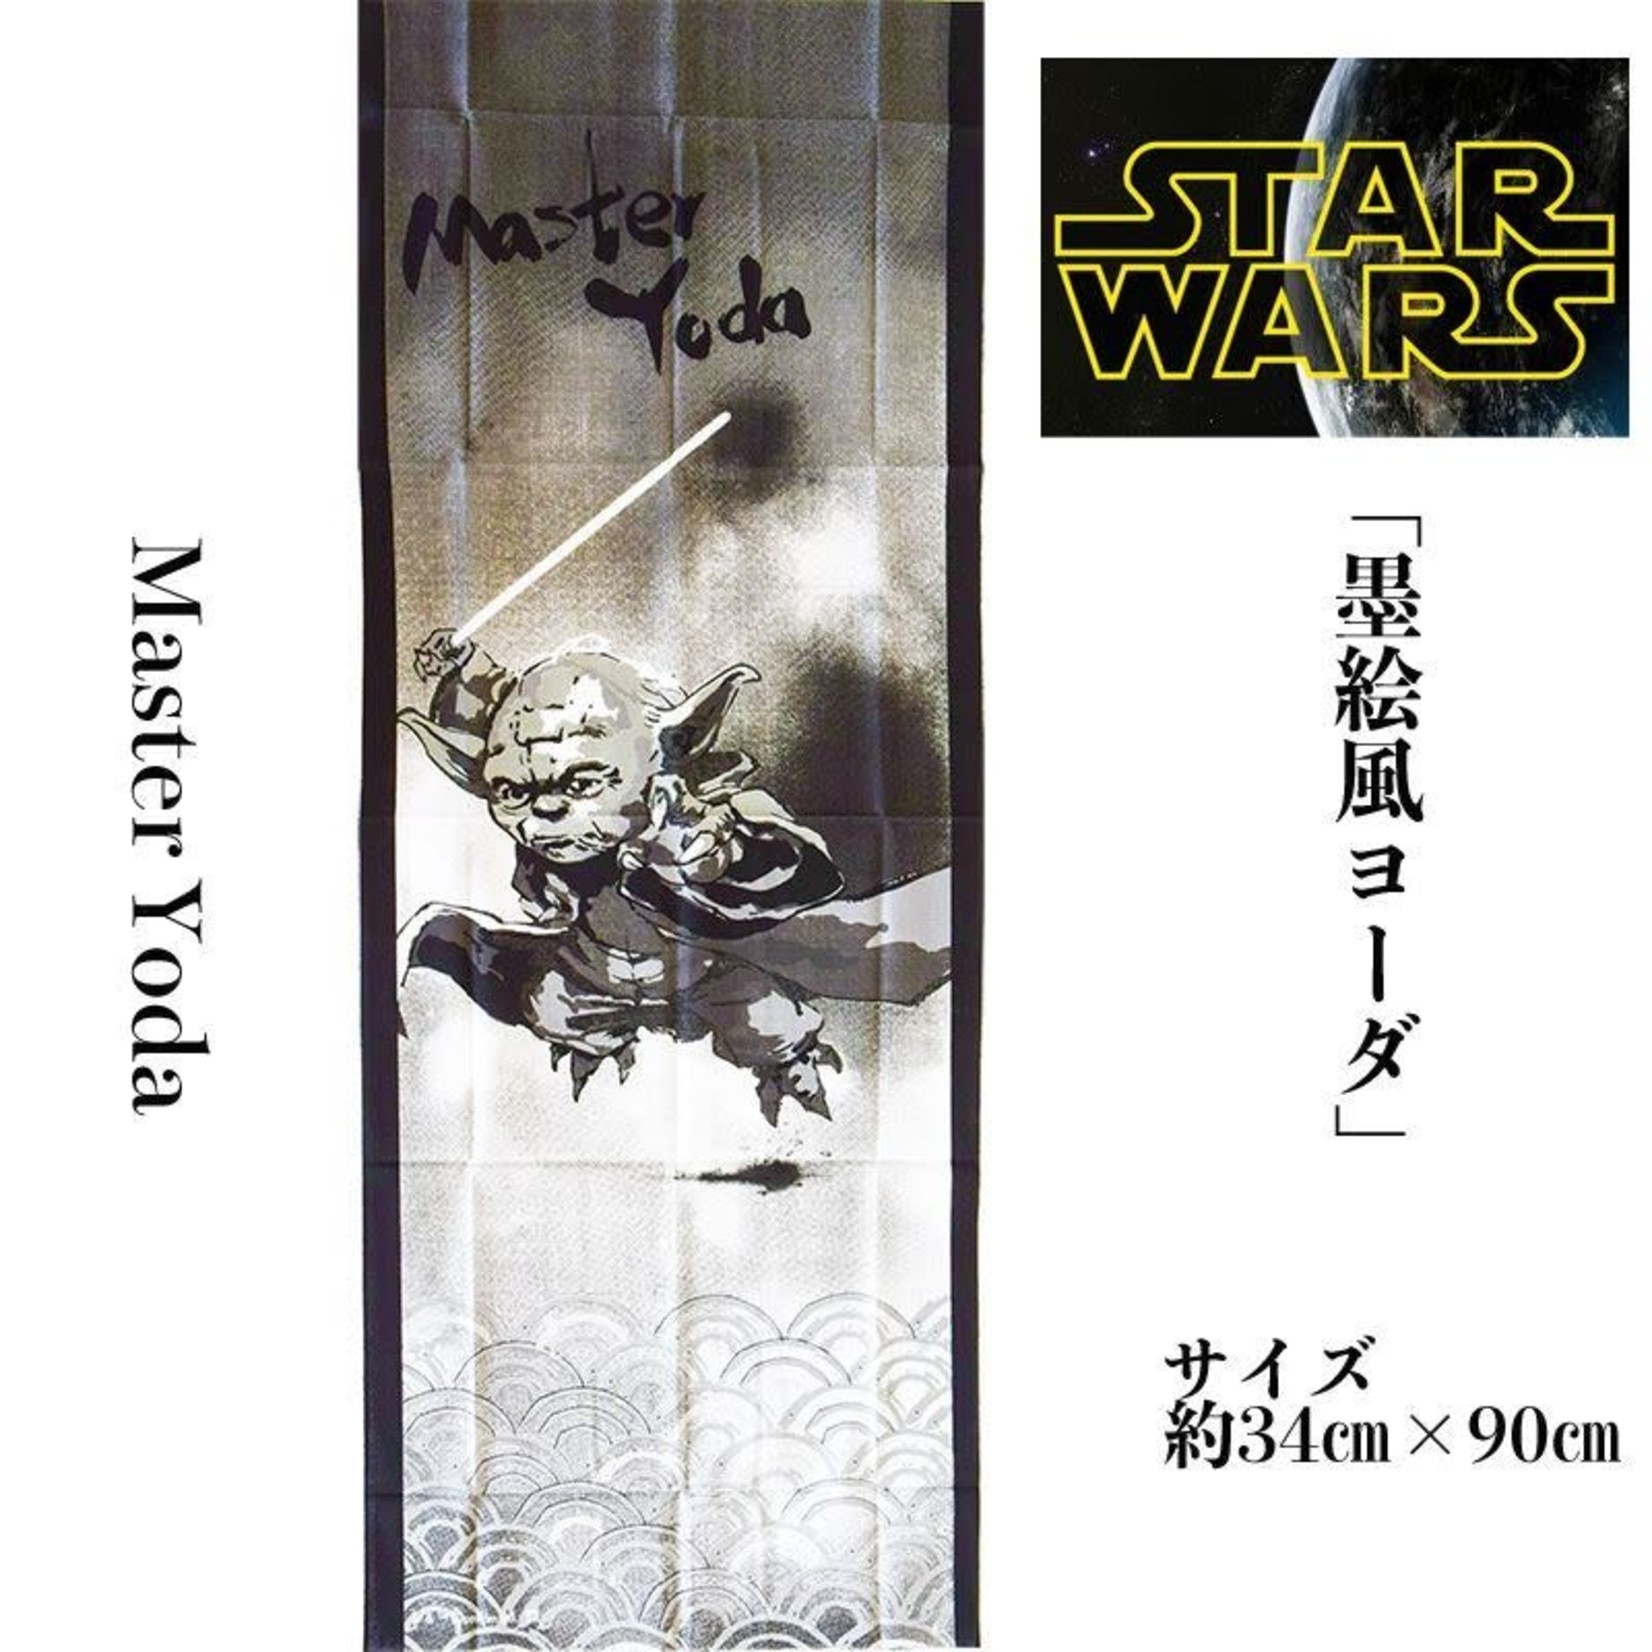 Star Wars - Yoda Tenugui Sumi-e Style